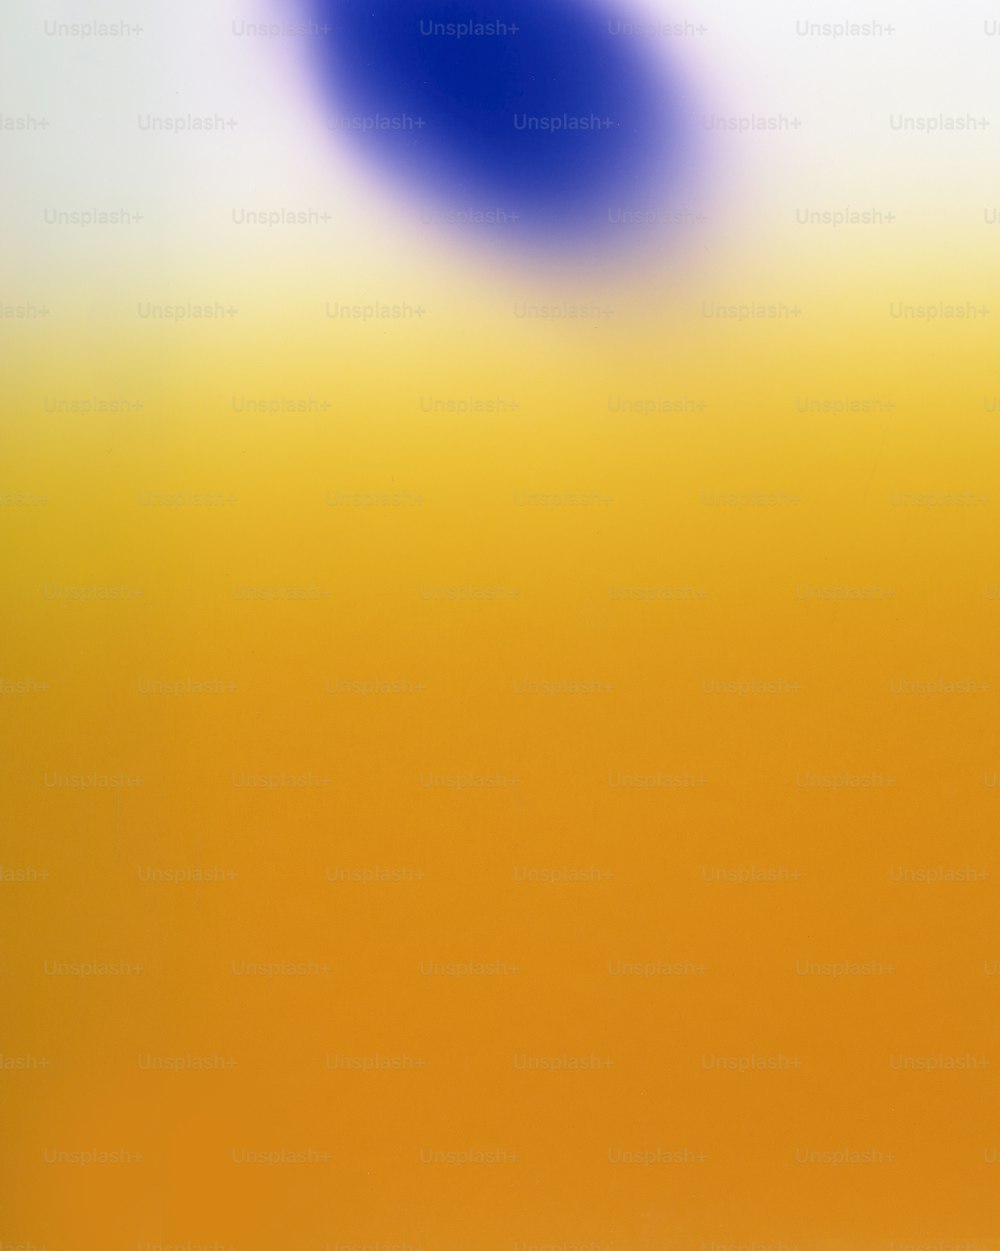 un'immagine sfocata di uno sfondo giallo e blu